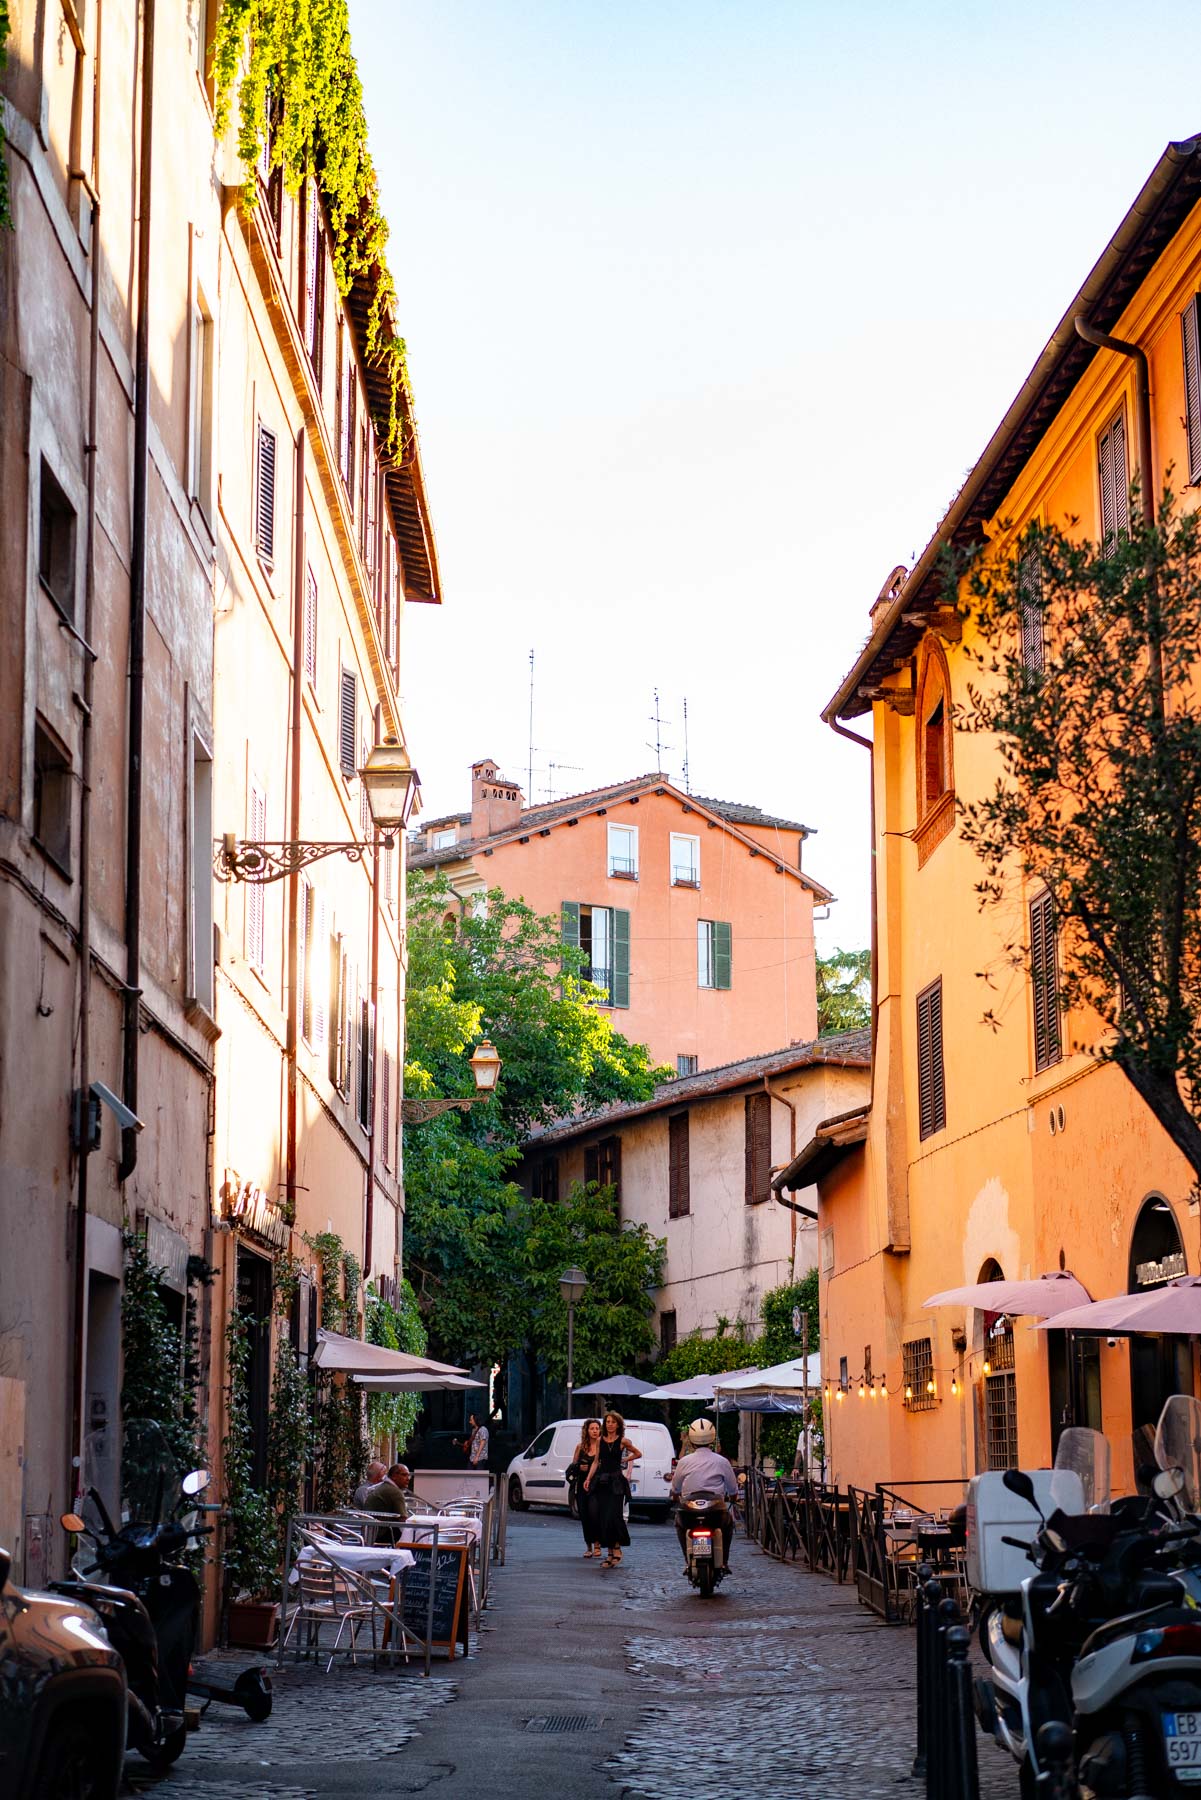 Trastevere most charming neighborhoods in Rome